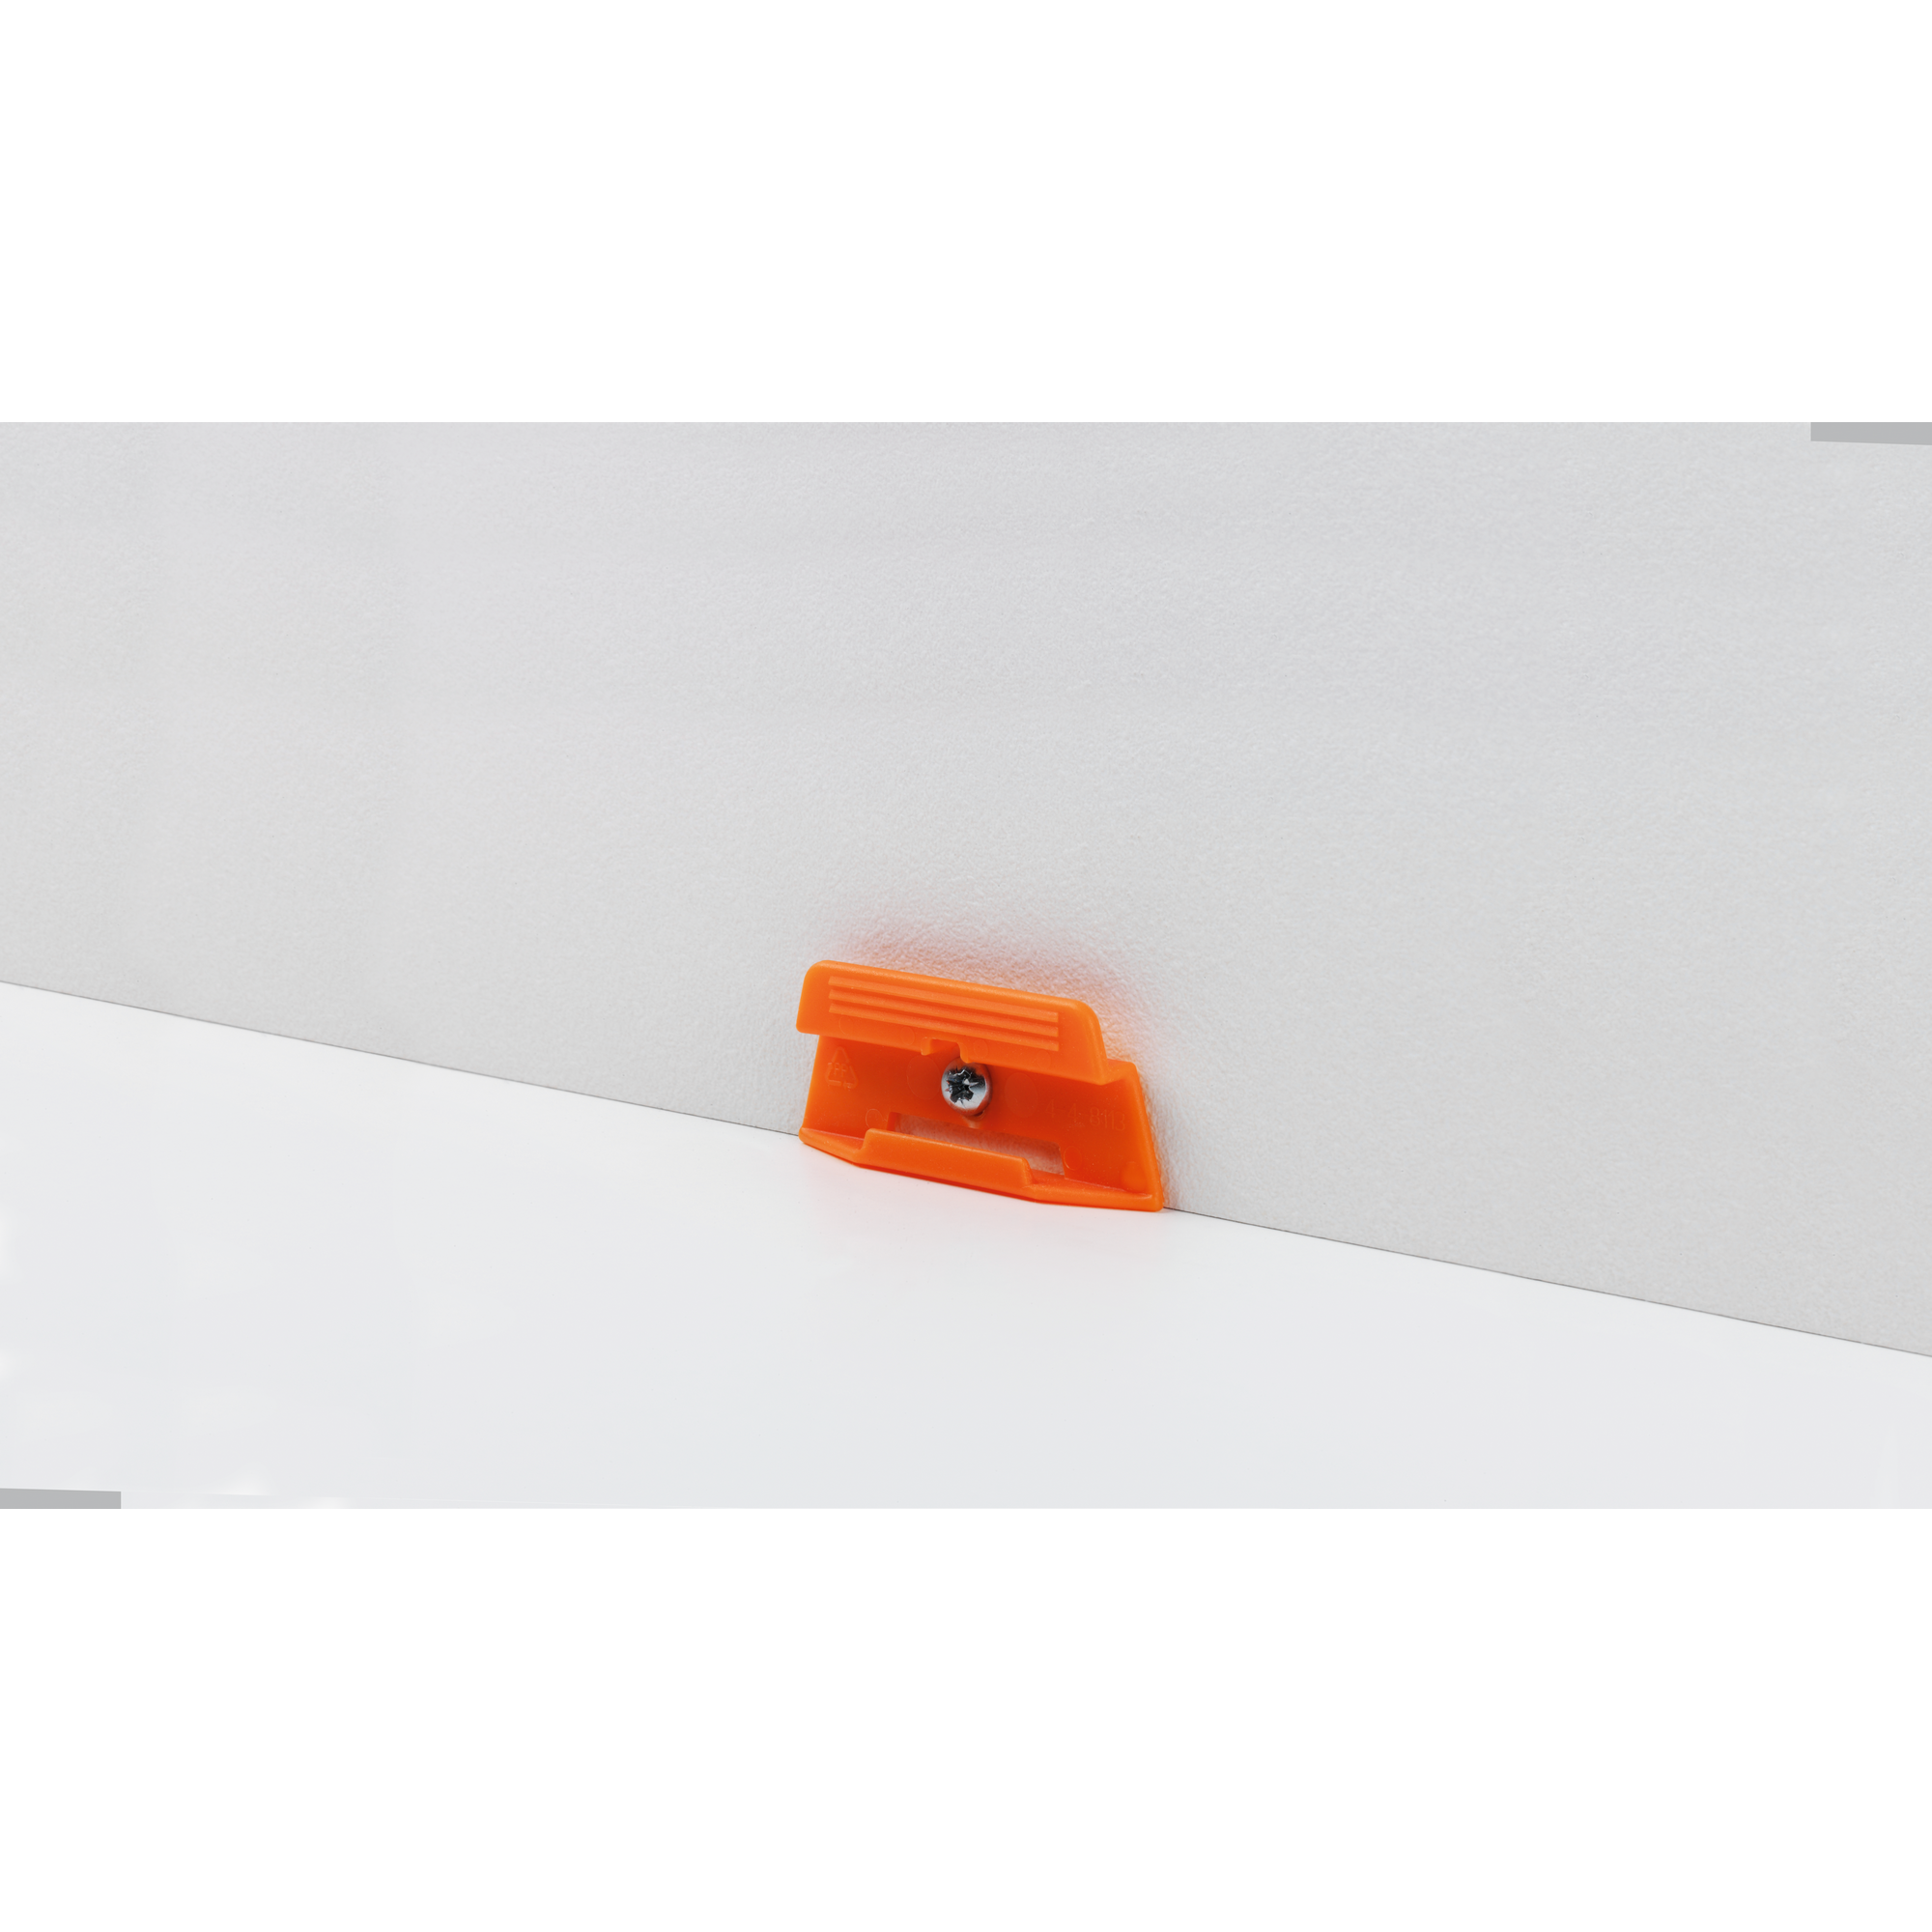 Clips für Sockelleisten SL 3 orange, 24 Stück + product picture